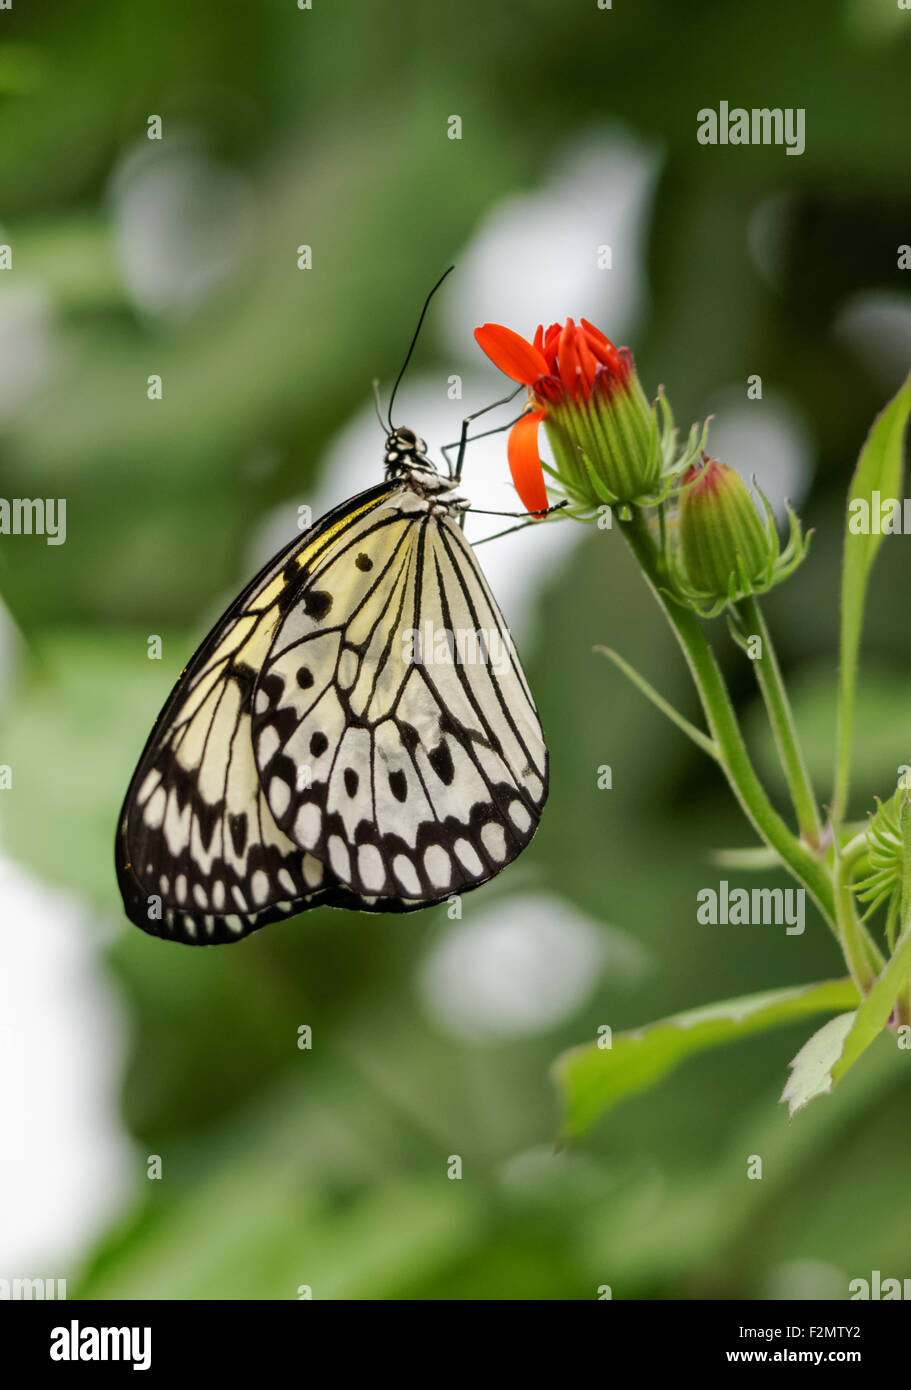 Arbre MALABAR papillon nymphe, idée malabarica Banque D'Images